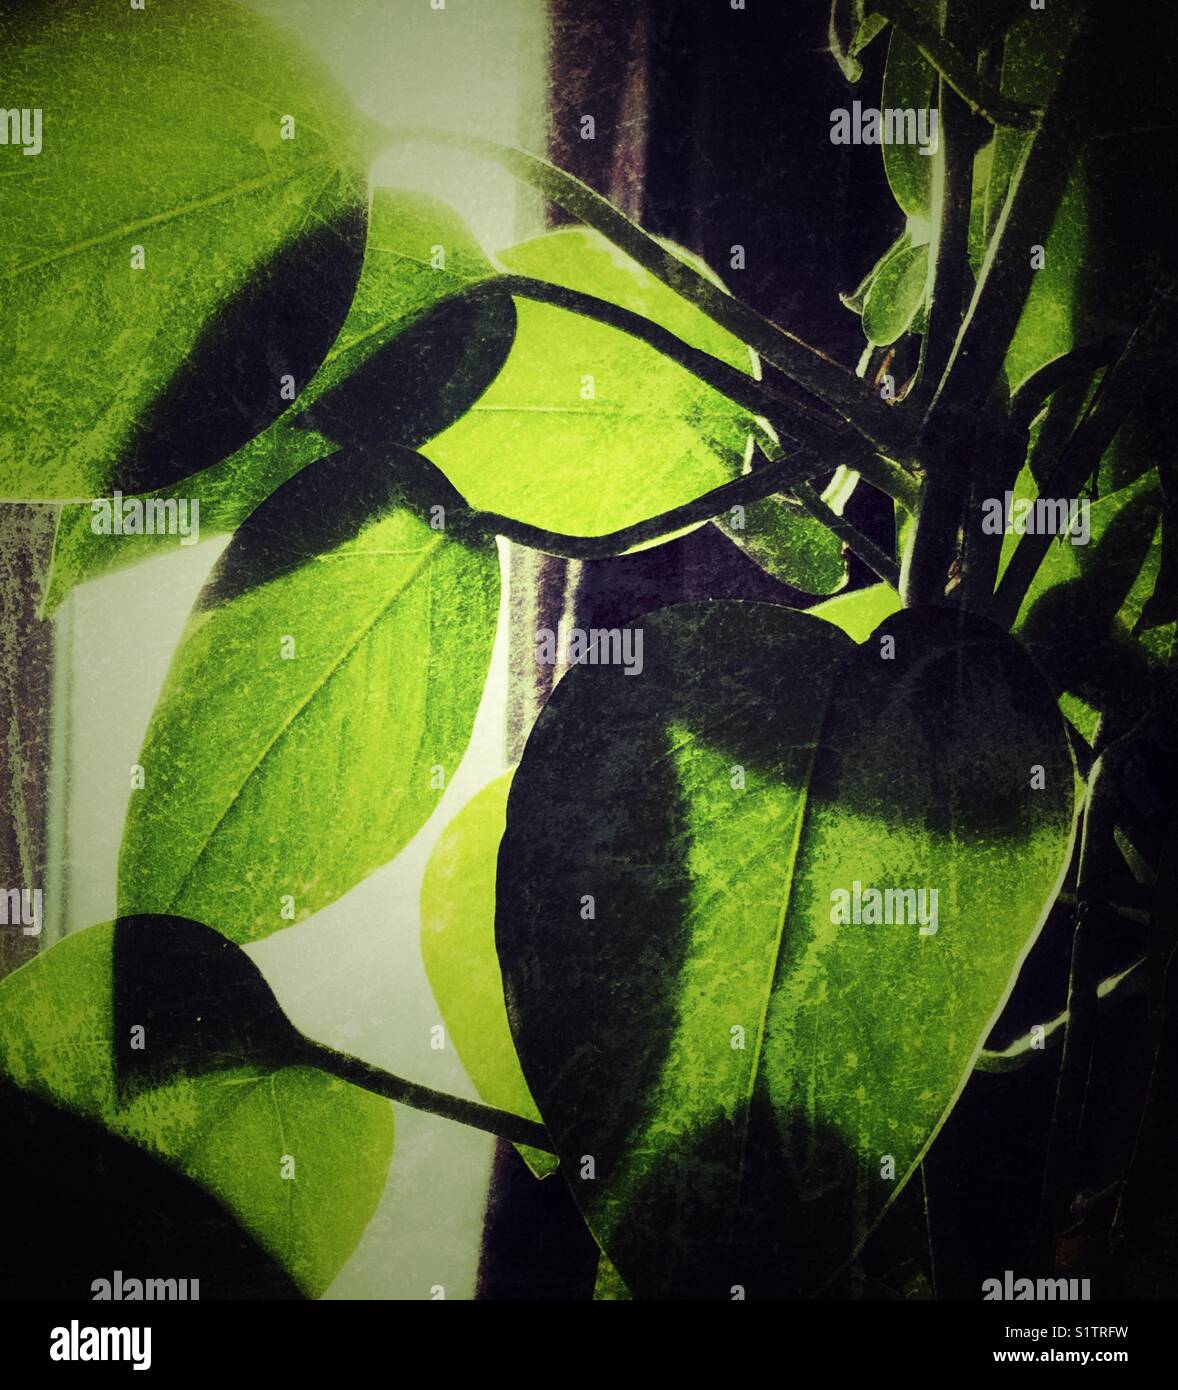 Primo piano immagine di Pothos pianta / Devil's edera (Epipremnum aureum) retroilluminati da luce del sole da una finestra in background Foto Stock